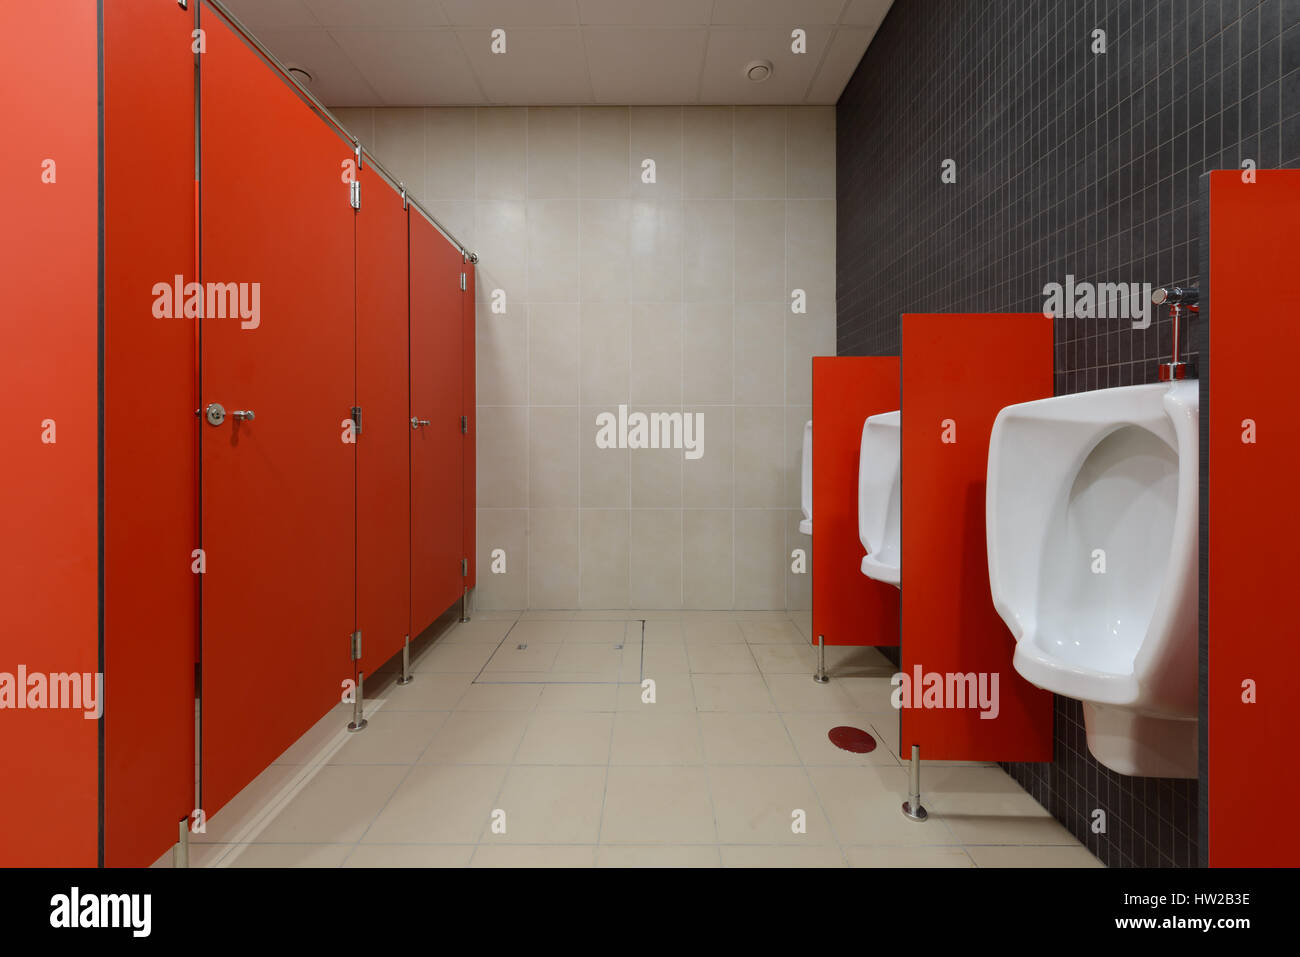 Urinale auf öffentliches Bad Stockfoto